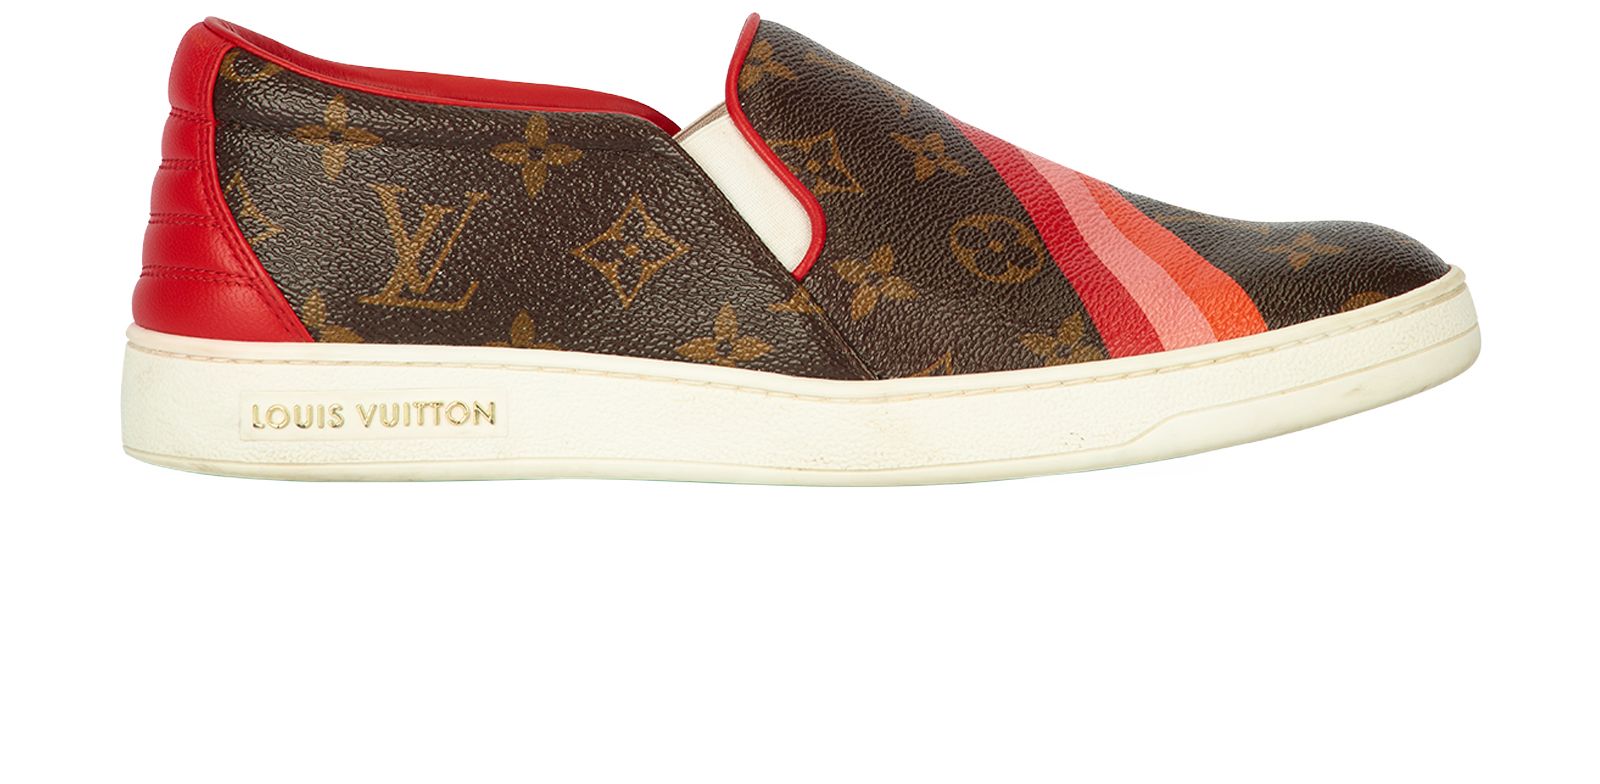 Louis Vuitton, Shoes, Louis Vuitton Holographic Slides